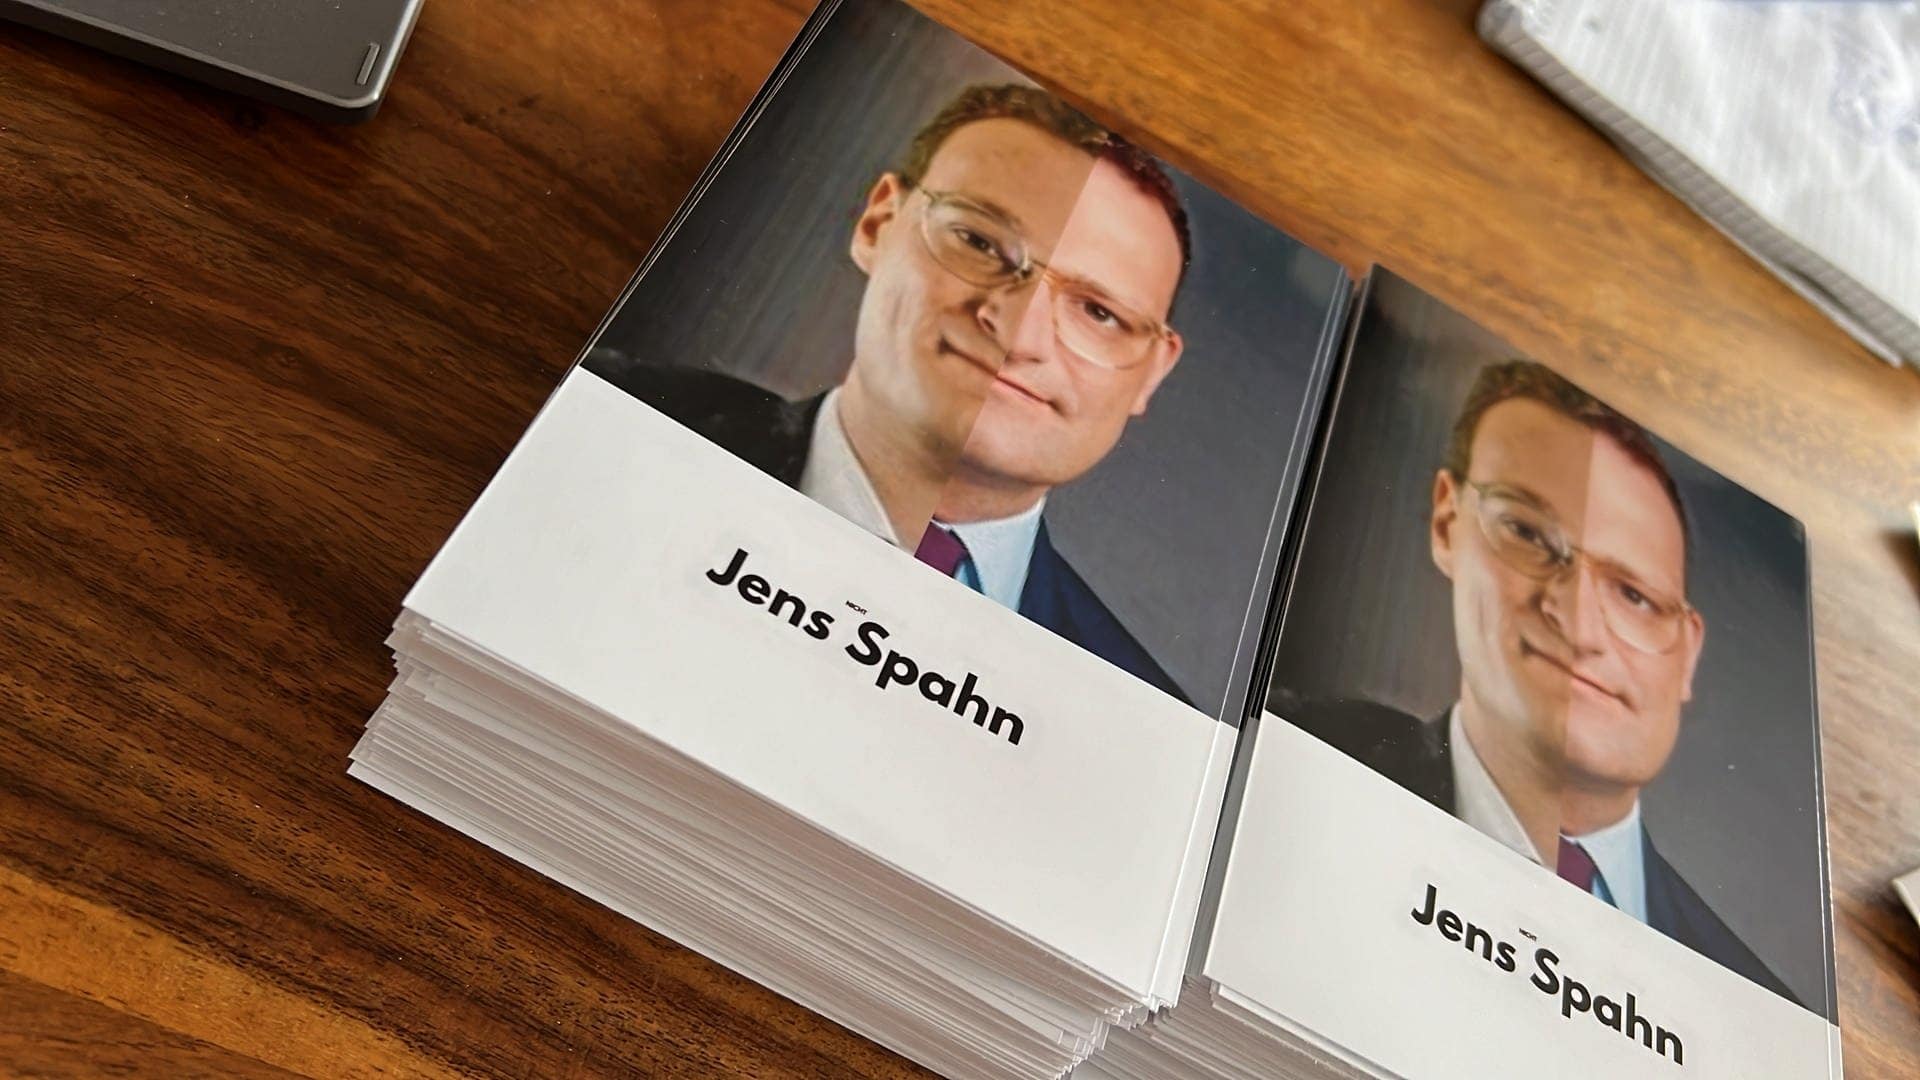 Autogrammkarten, die Mirco Budde hat drucken lassen: Das Gesicht ist halb er, halb Jens Spahn – ein Doppelgänger, der zum Verwechseln änlich sieht. (Foto: Mirco Budde)